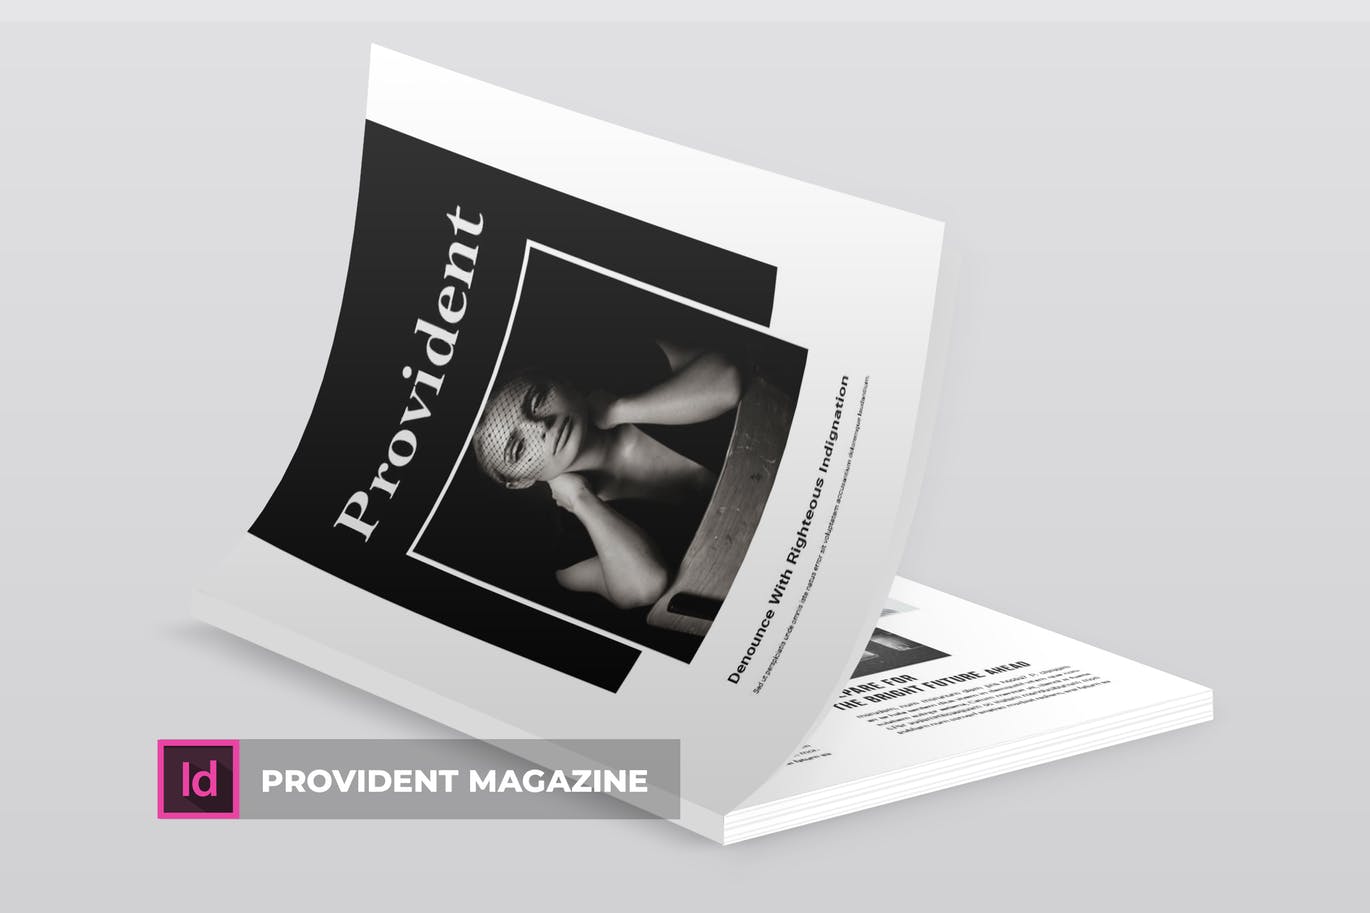 高端摄影主题A4素材库精选杂志版式设计INDD模板 Provident | Magazine Template插图